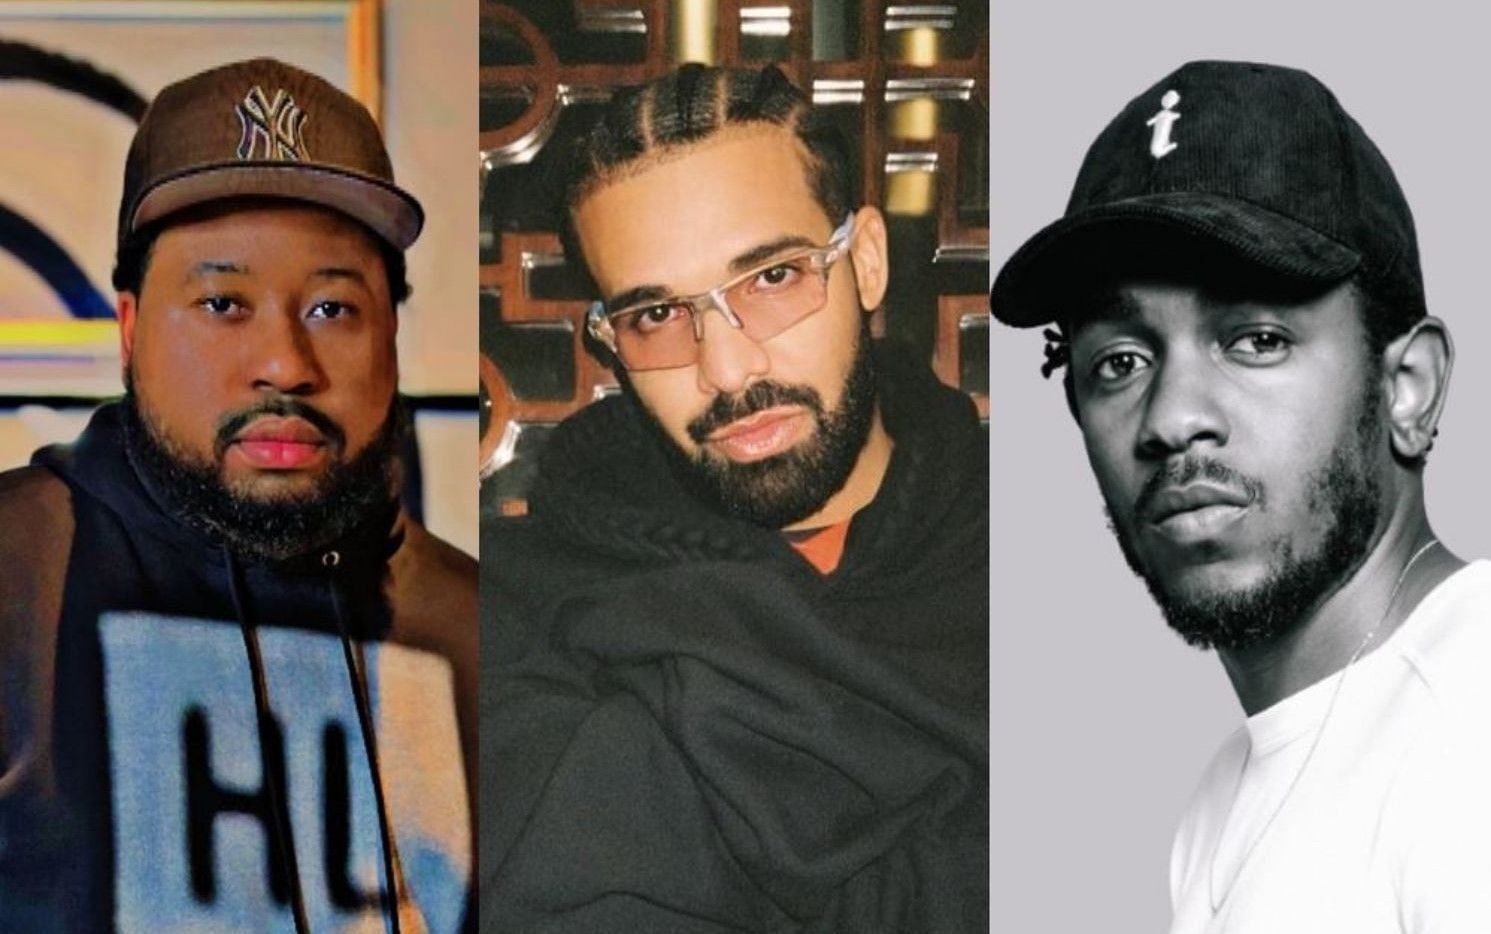 Atlanta Hawks Twitter trolls Drake supporter DJ Akademiks (L) over Kendrick Lamar